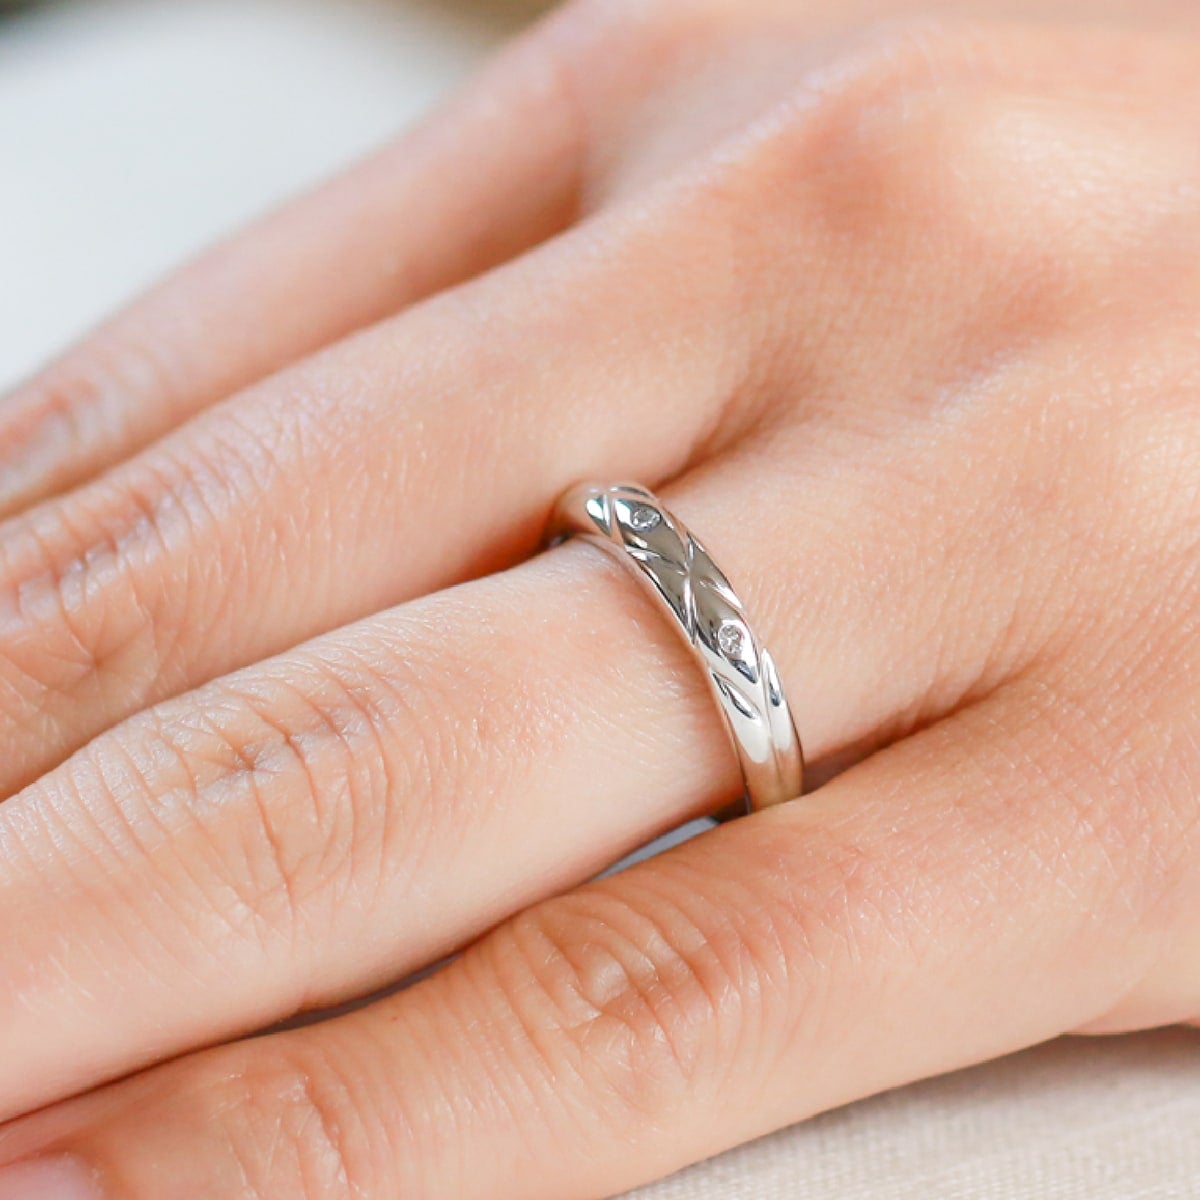 結婚指輪 ダイヤモンド 2本セット | dr499l-dr499m